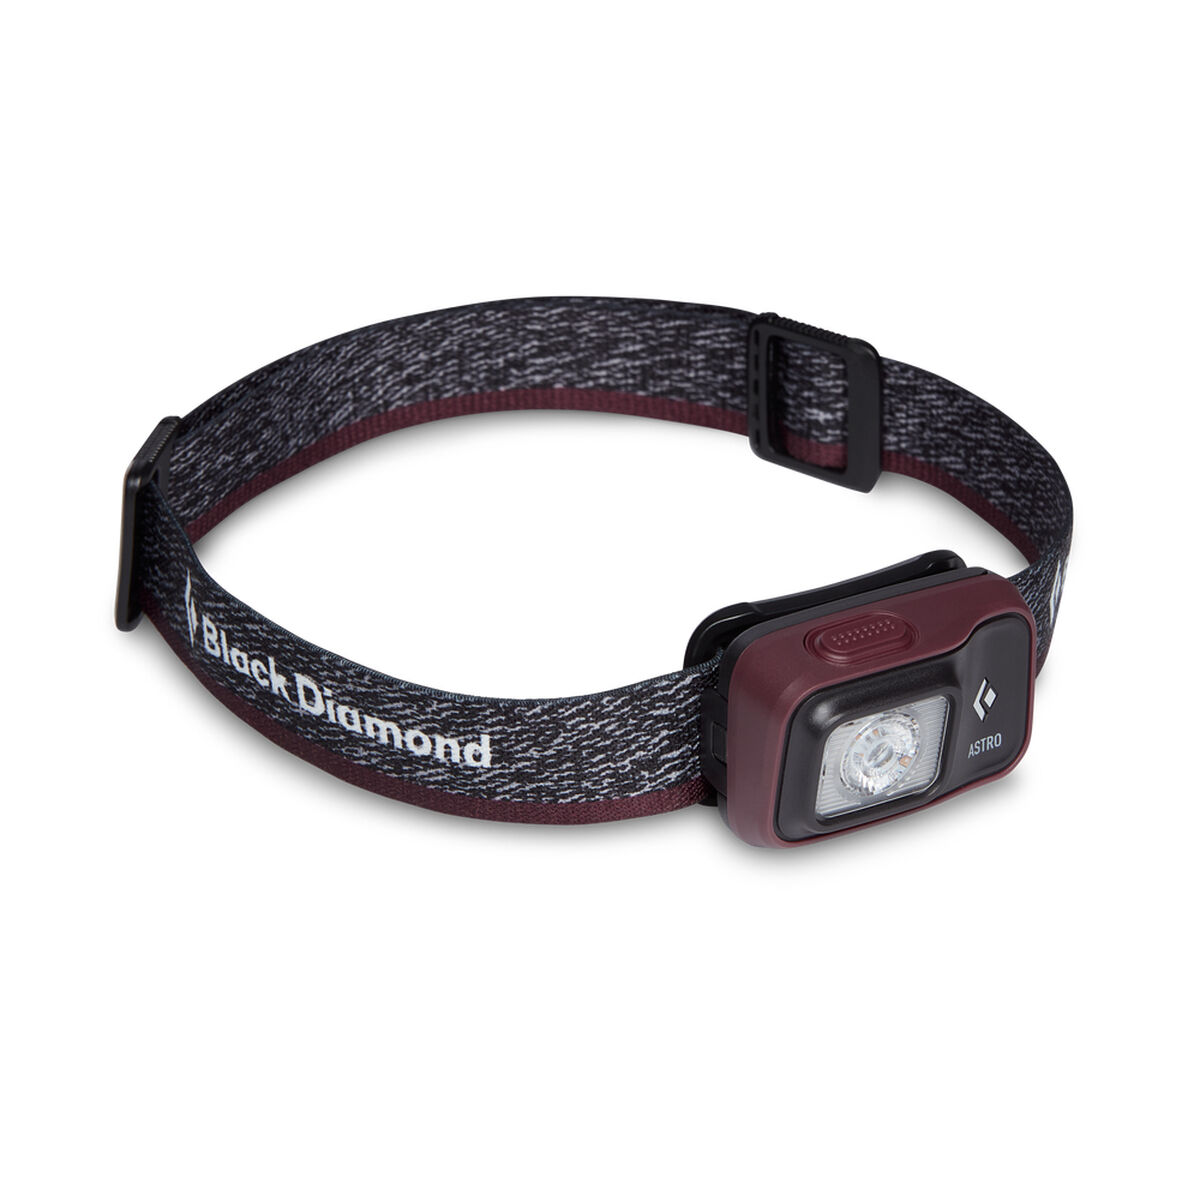 Lanterne LED pour la Tête Black Diamond Astro 300 Noir Bordeaux 300 Lm